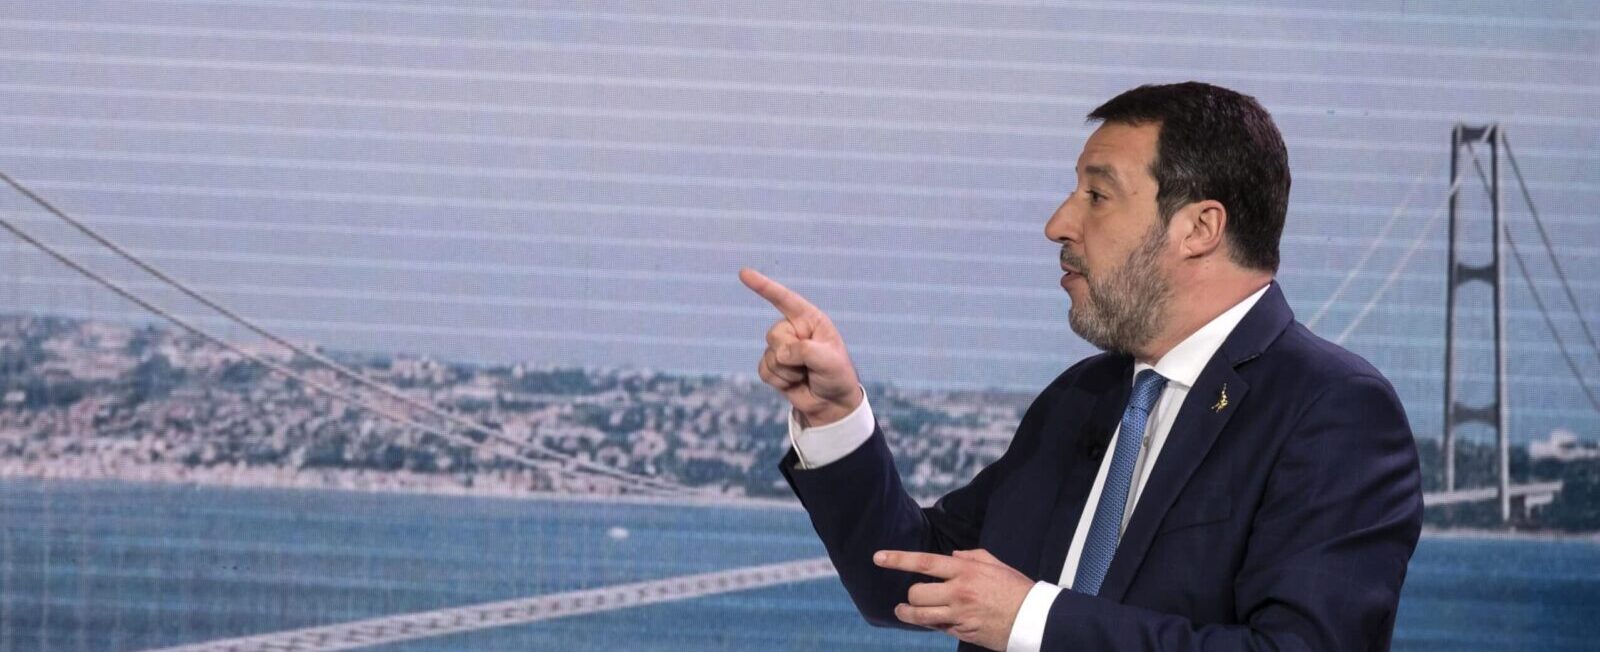 Ponte sullo Stretto, dopo la puntata di Report Pd e Avs chiedono a Salvini di riferire in Parlamento